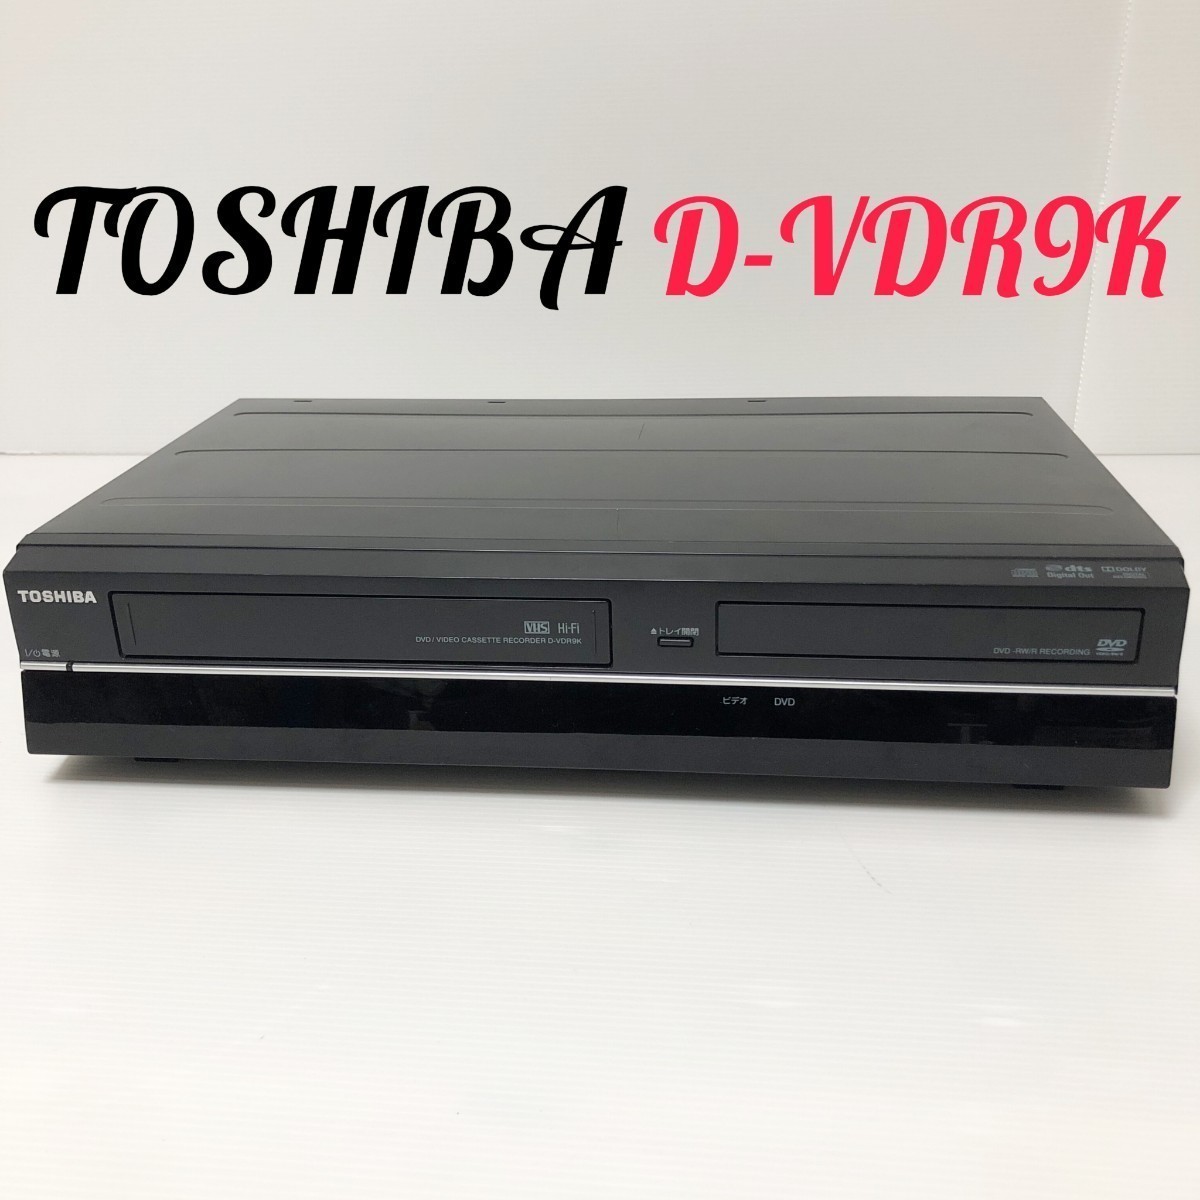 テレビ/映像機器 DVDレコーダー ヤフオク! -「d-vdr9k」の落札相場・落札価格